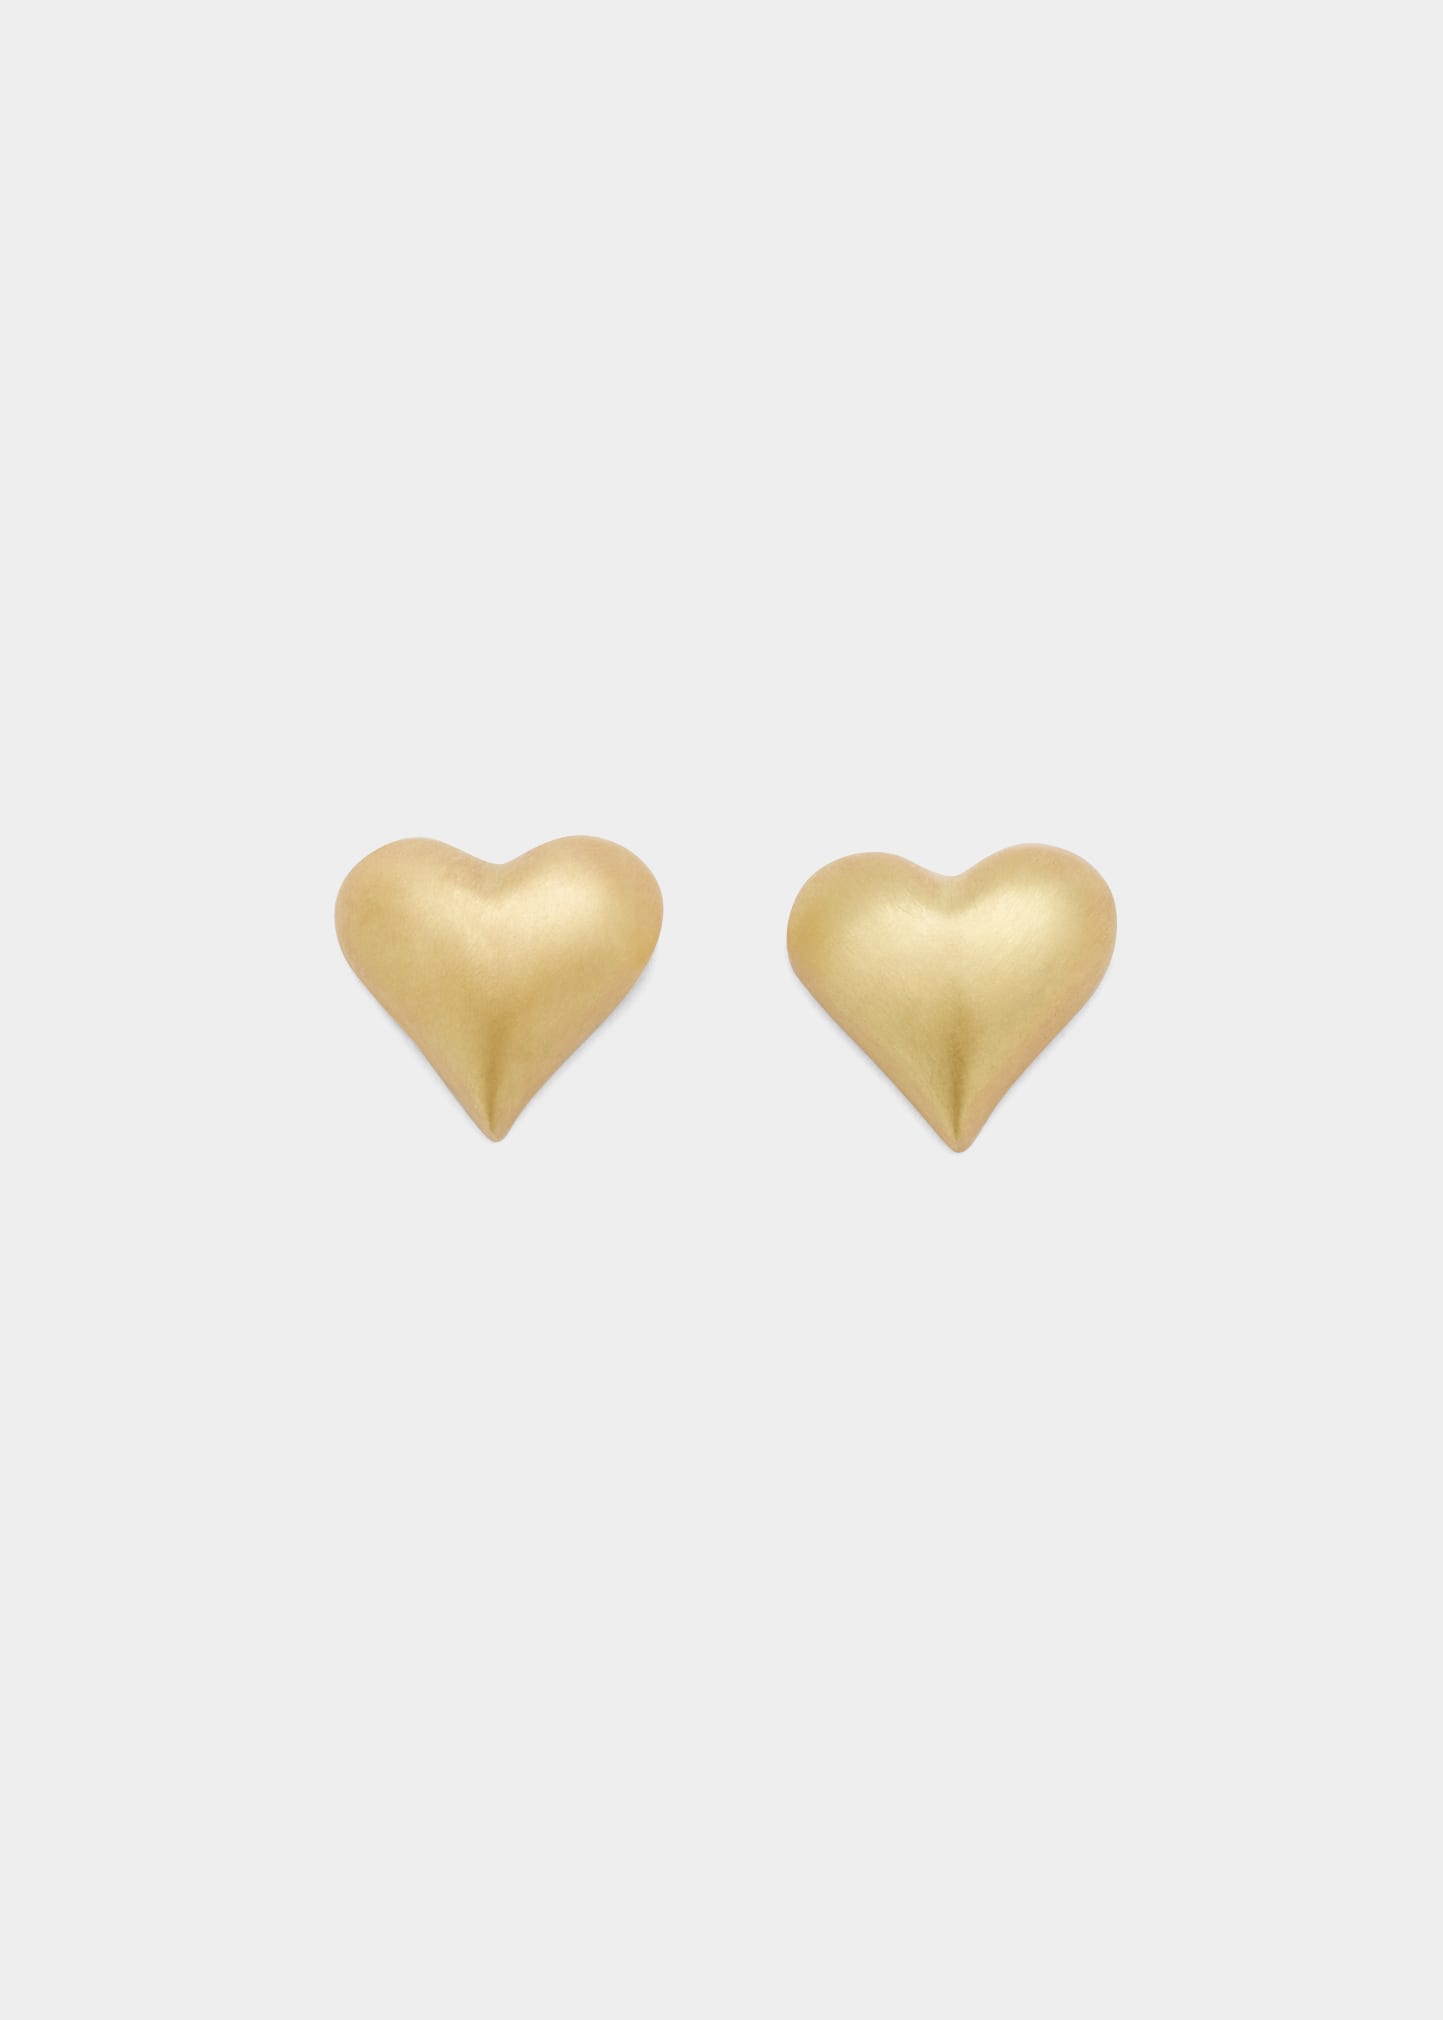 Small Heart Stud Earrings in 18k Gold